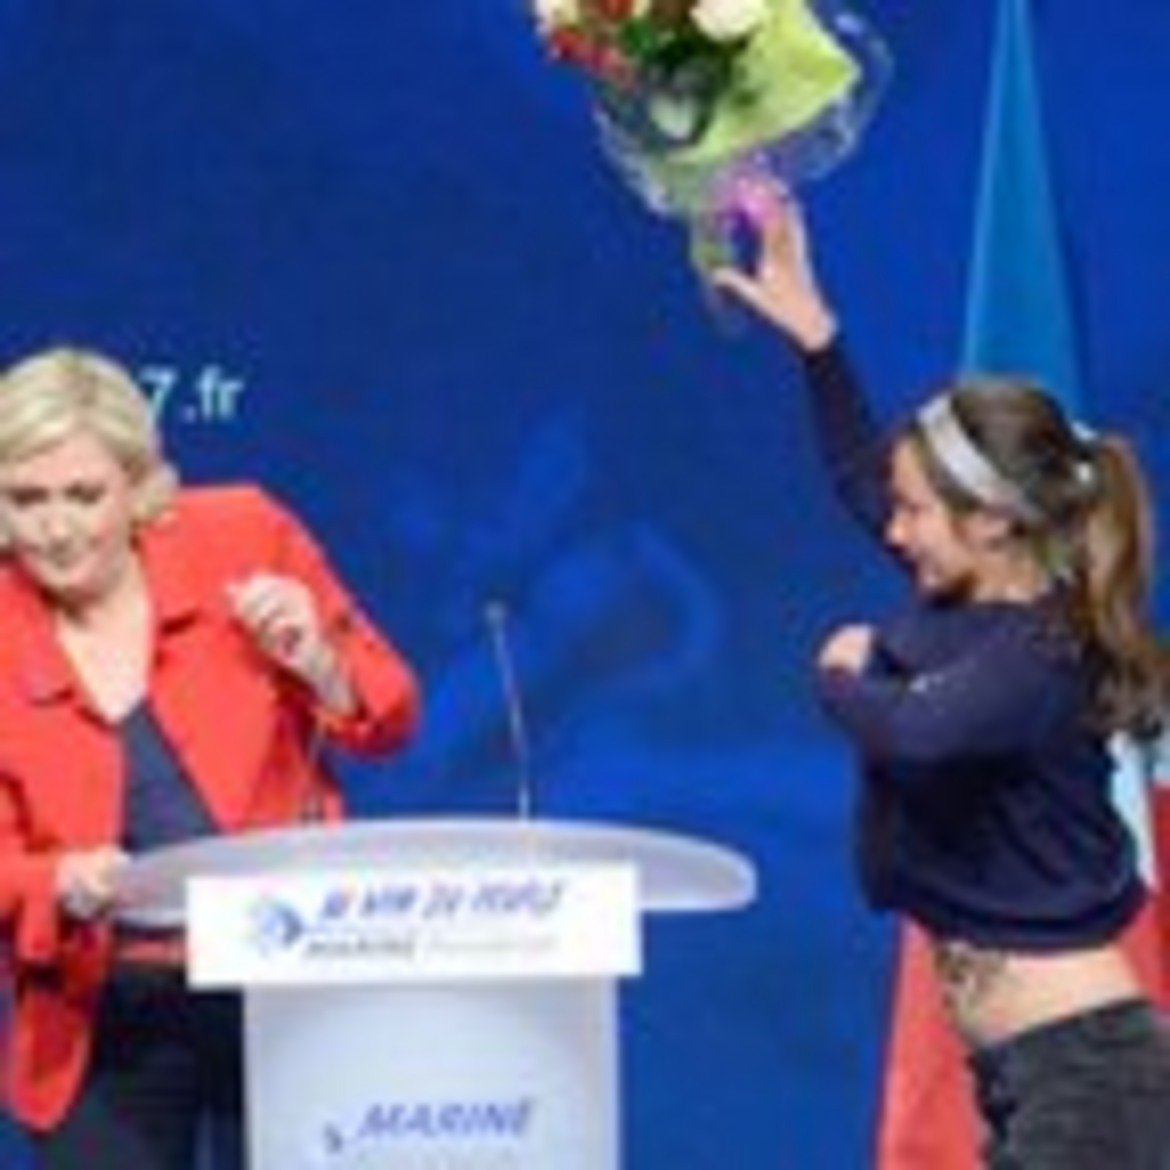 Обиди, замерване с предмети и дори коктейл Молотов. Това се случва по време на кандидат-президентската кампания на Марин Льо Пен във Франция.